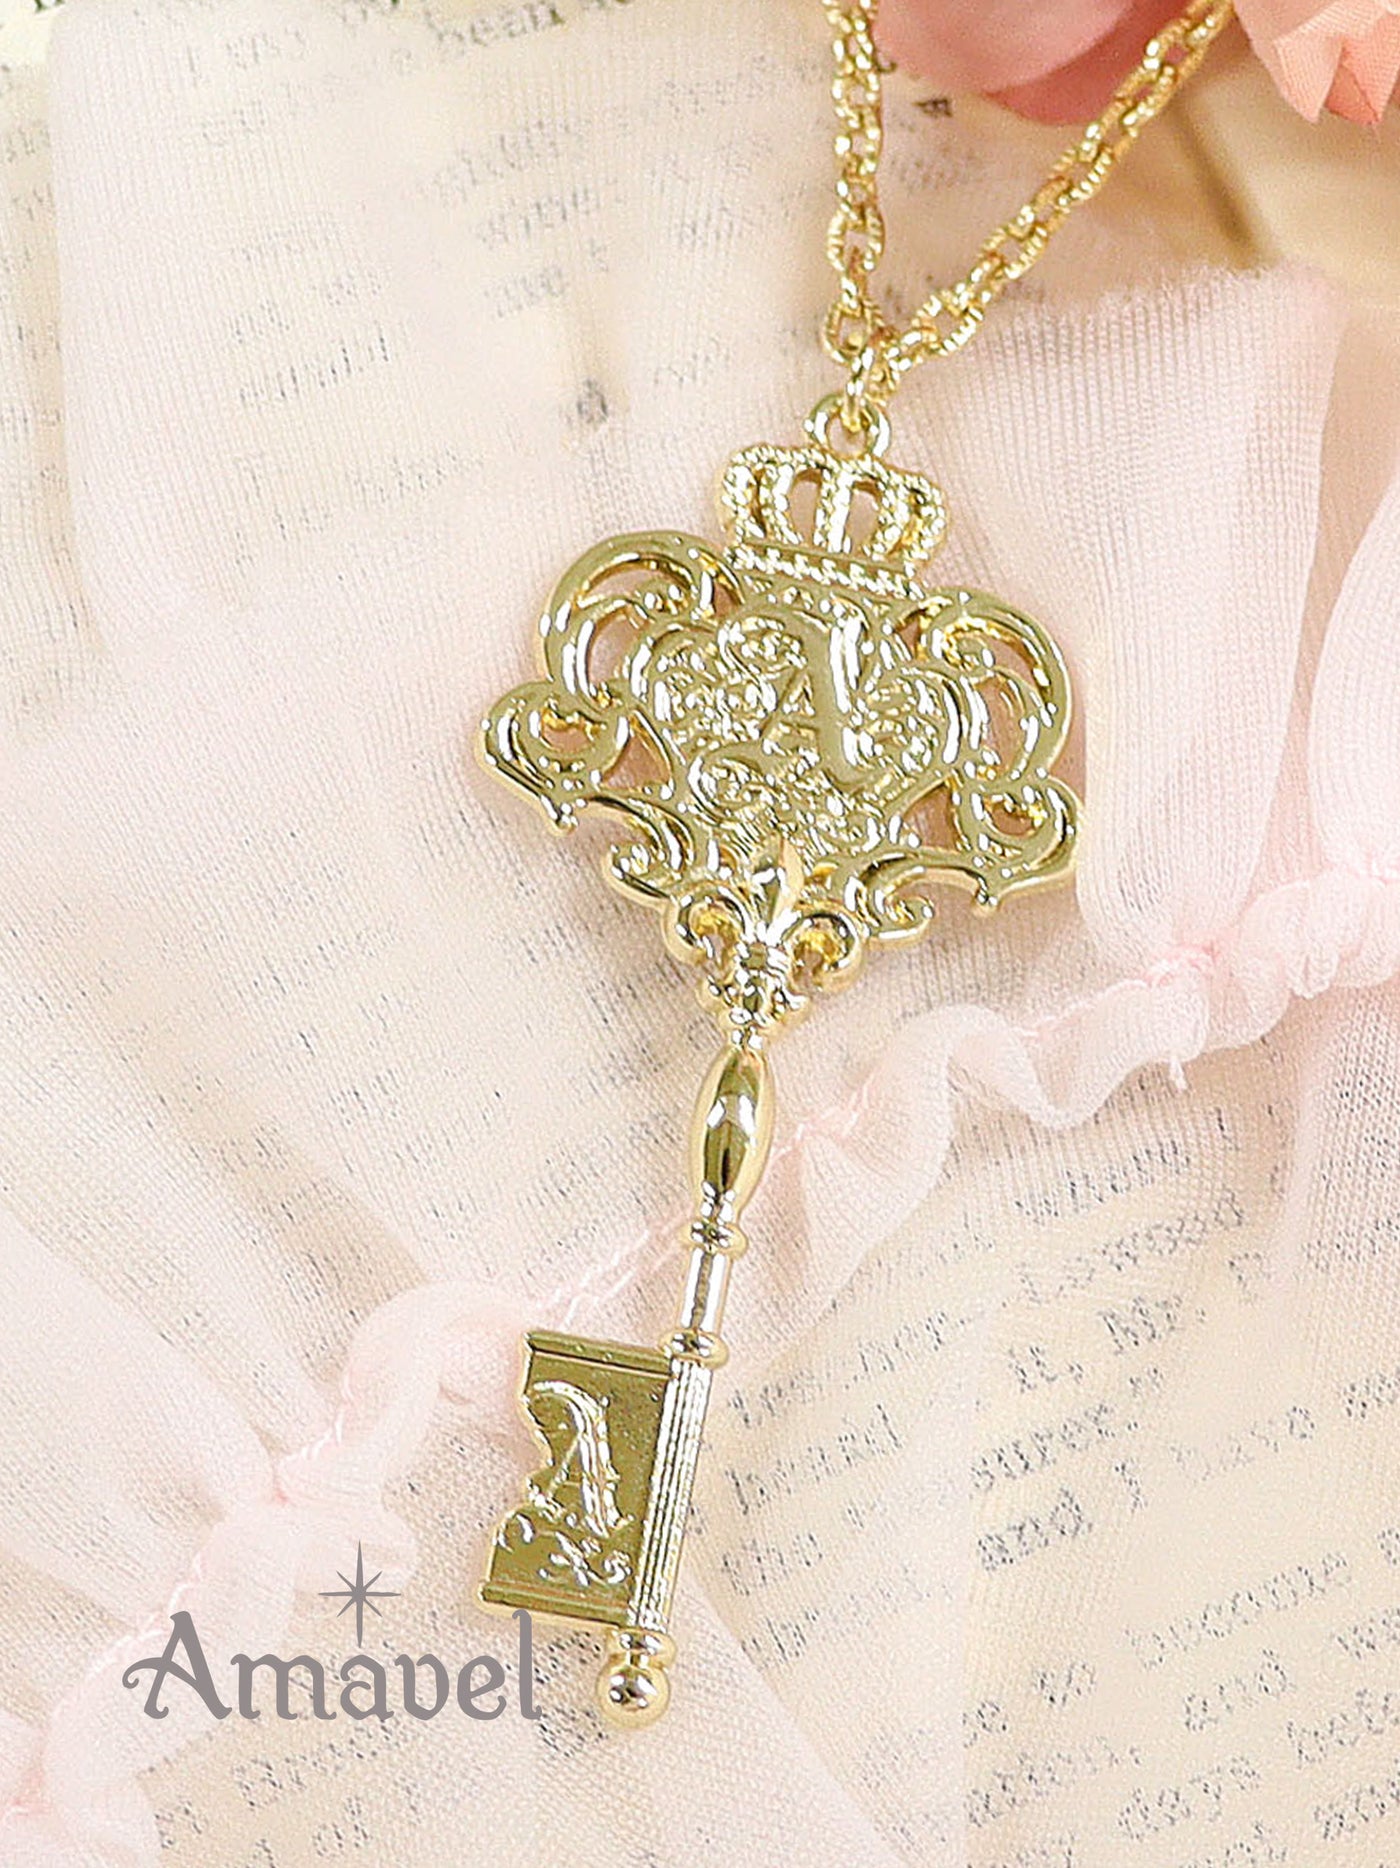 antique key necklace